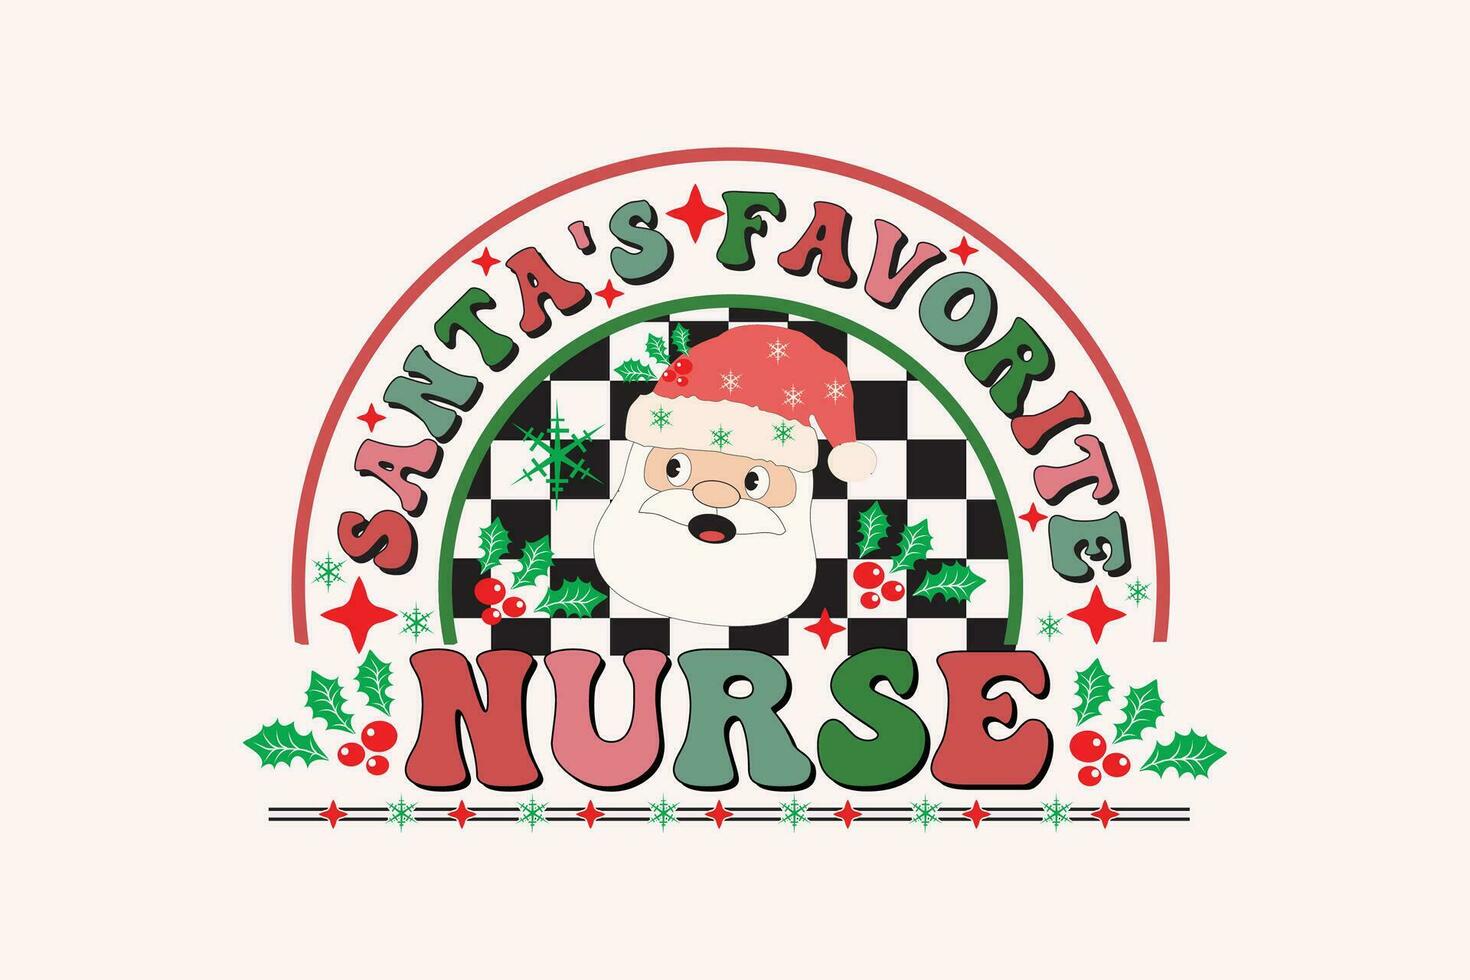 Santa's Liebling Krankenschwestern Weihnachten retro Typografie T-Shirt Design vektor